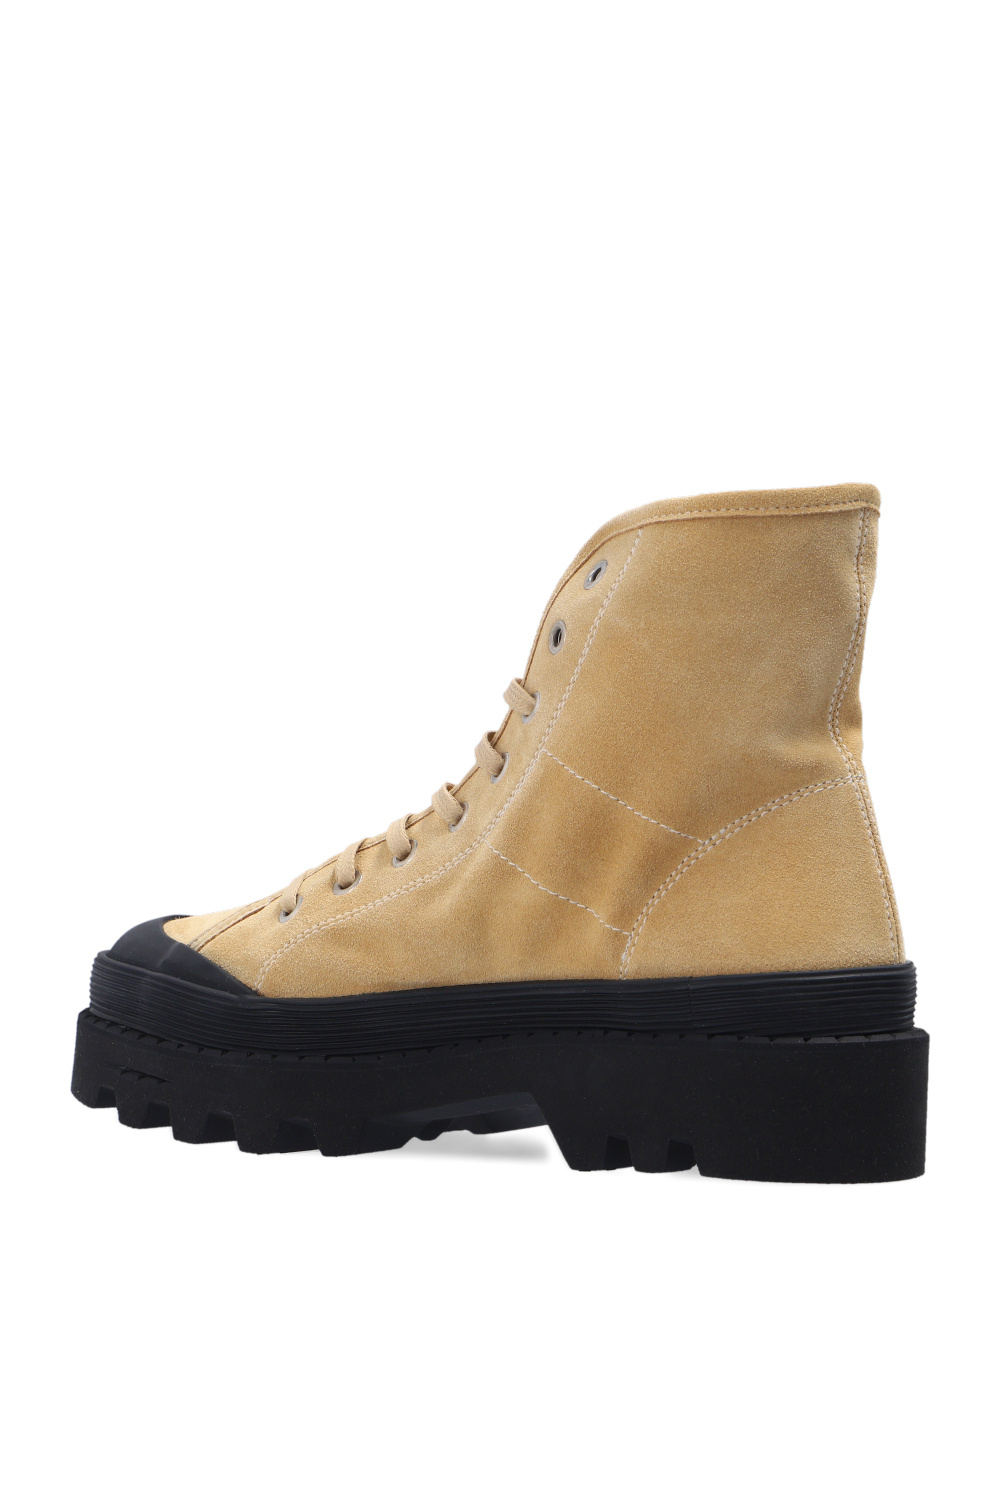 Proenza Schouler ‘Combat’ boots